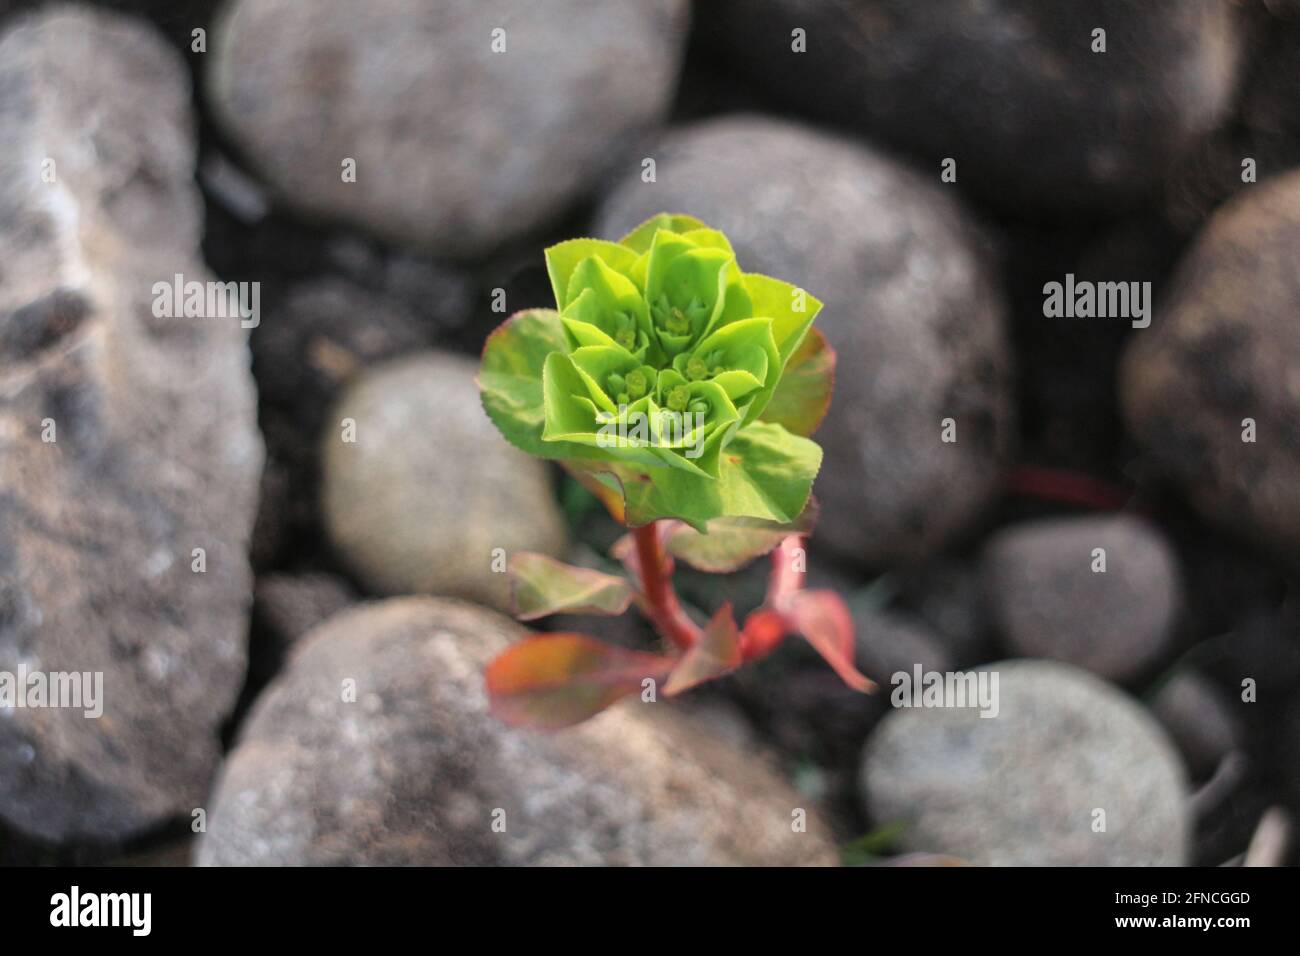 La planta verde crece entre las piedras grises Foto de stock